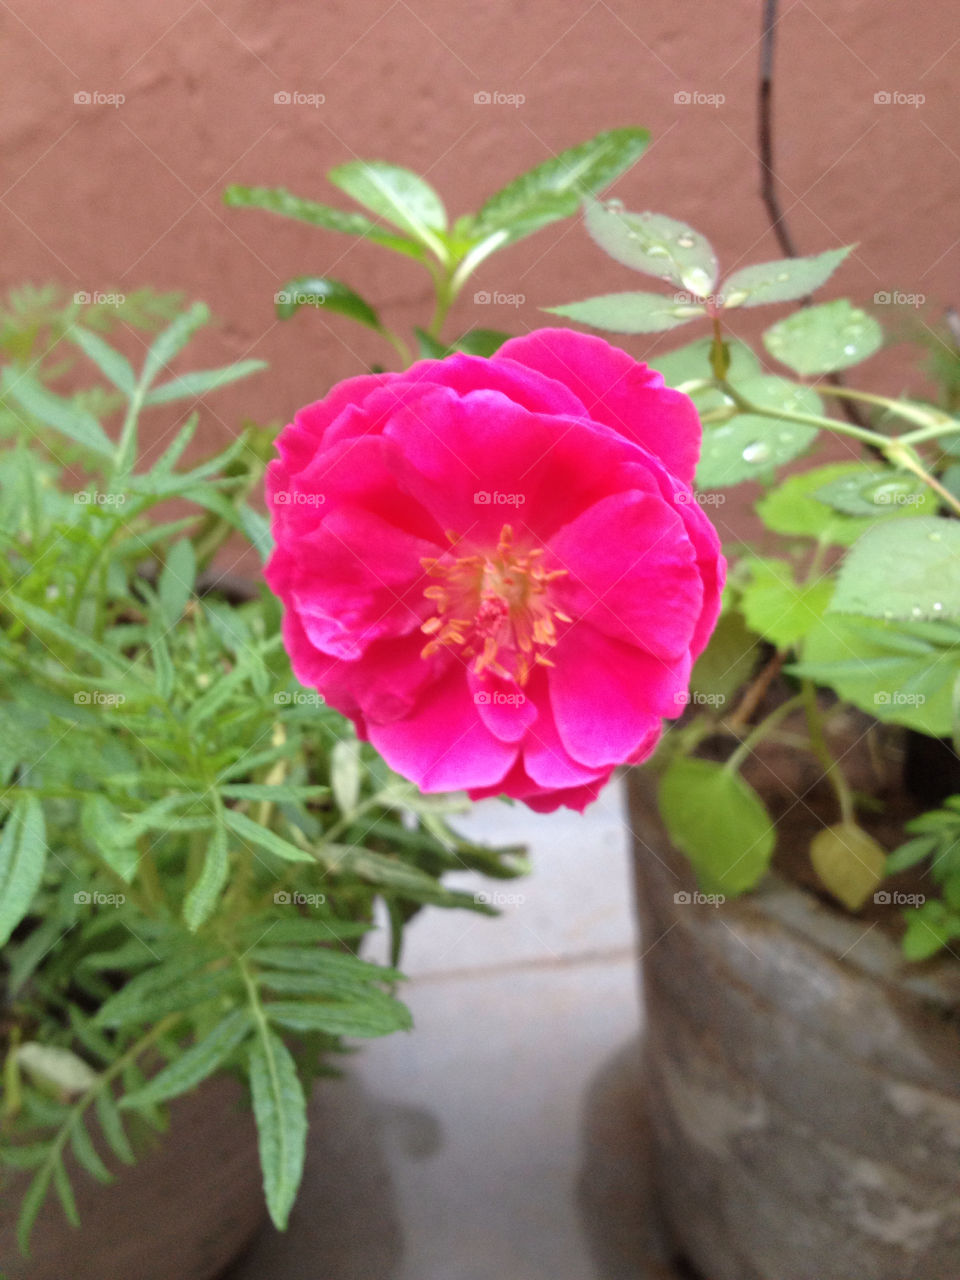 india rose morning-rose by kunaldaca